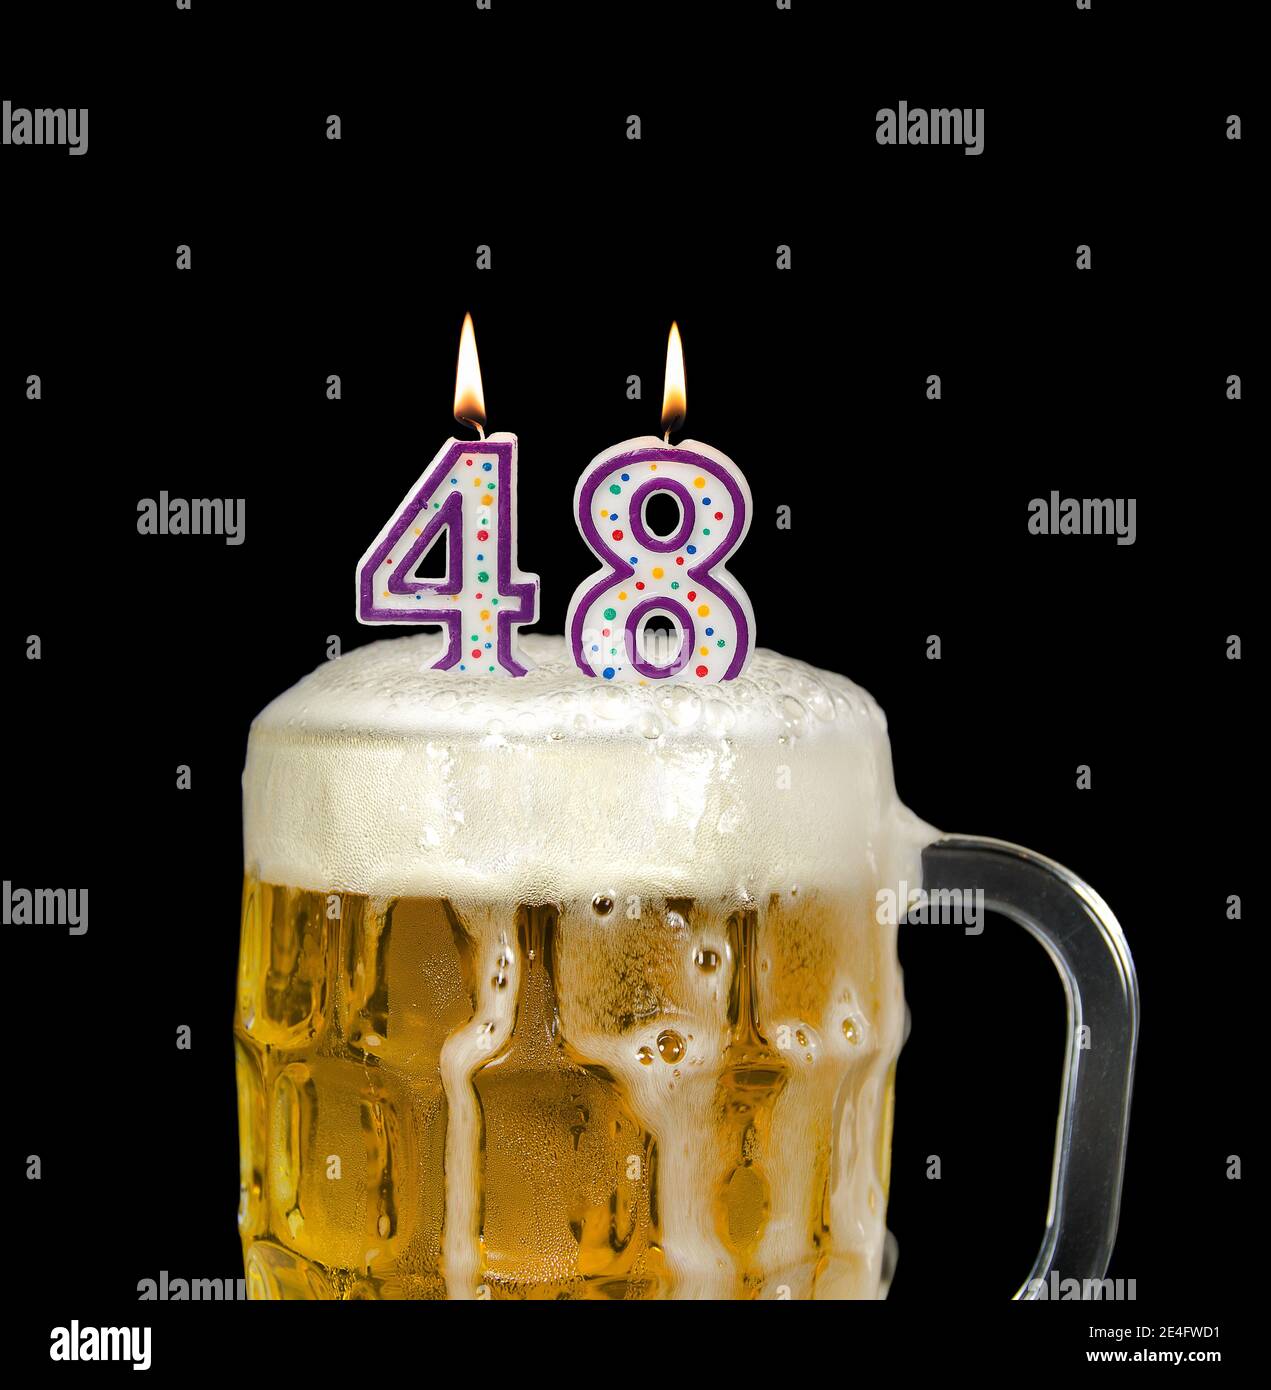 Vela negra de cumpleaños 50, número 50 años de edad velas decoración de  pastel, decoración de fiesta de mujer o hombre, suministros